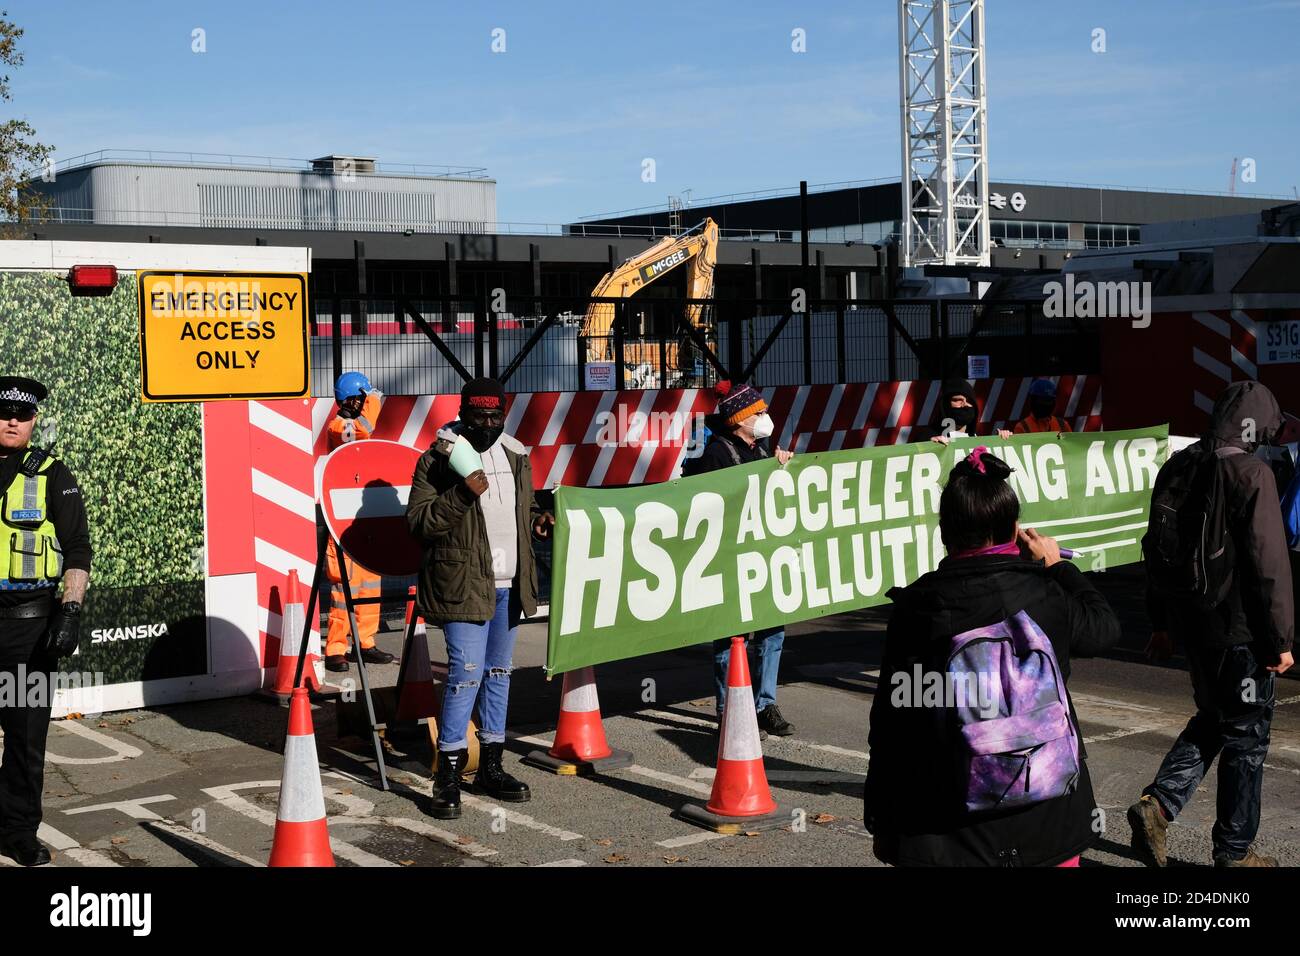 Estación Euston, HS2, Londres, Reino Unido. 9 de octubre de 2020. Protestas por el cambio climático contra el HS2 fuera de la estación de Euston y el sitio de construcción del HS2, donde algunos manifestantes bloquearon la salida al sitio. Crédito: Matthew chattle/alamy Live News Foto de stock